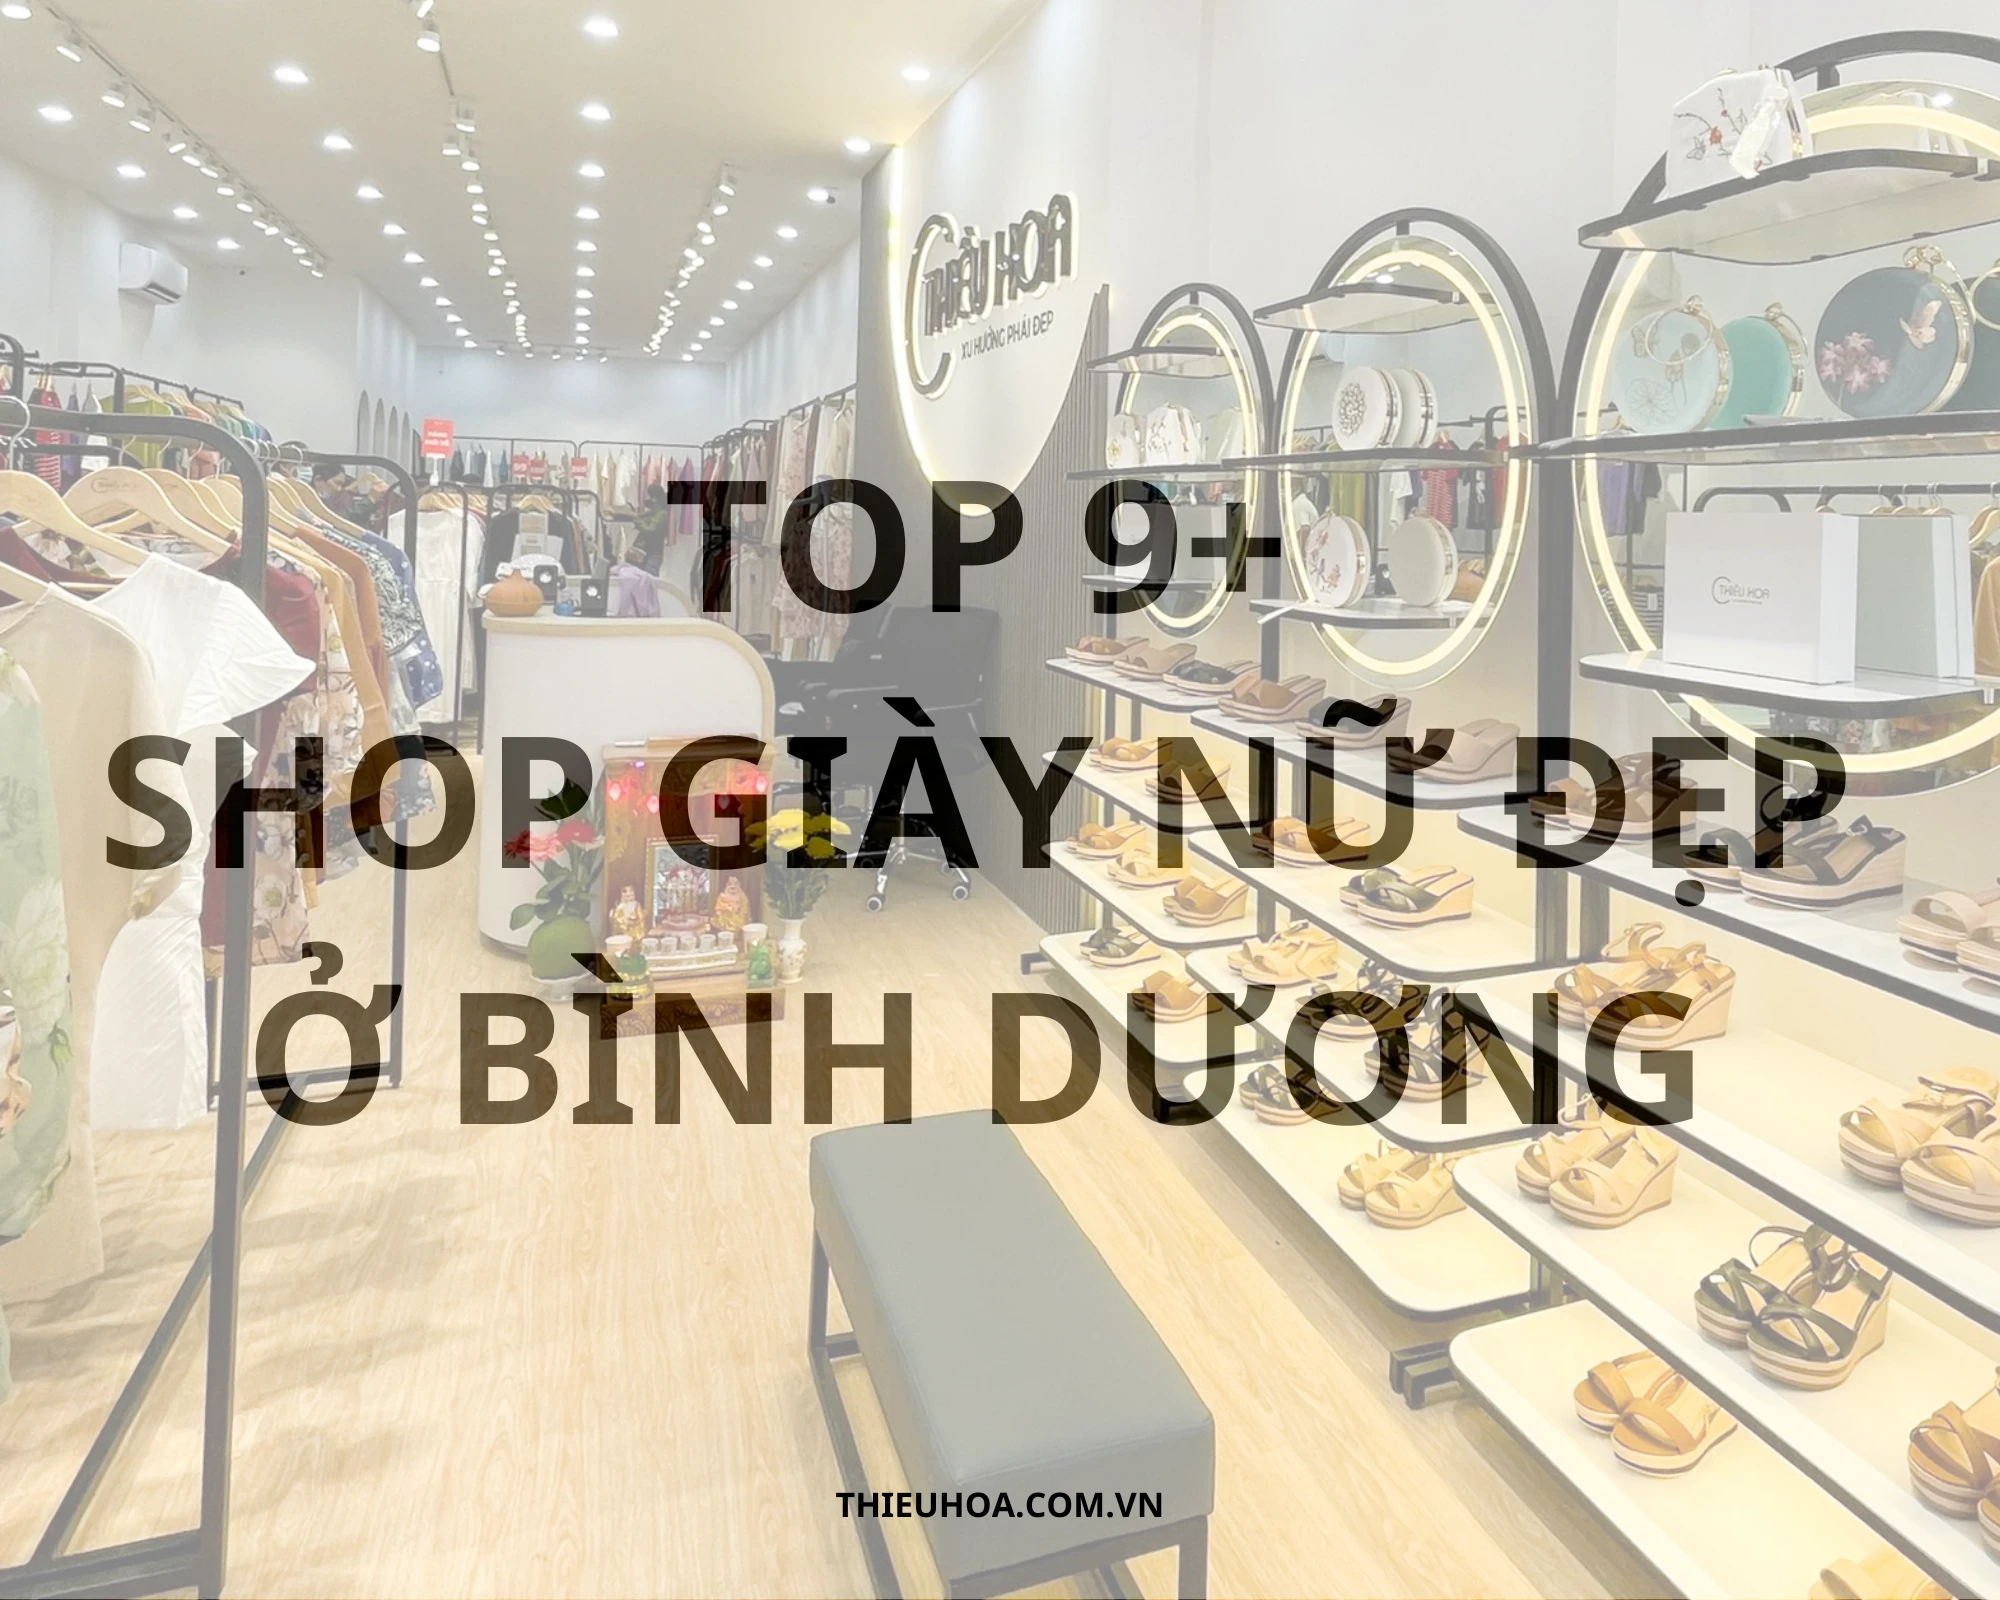 TOP 9+ Shop bán giày nữ ở Bình Dương đẹp, chất lượng nhất